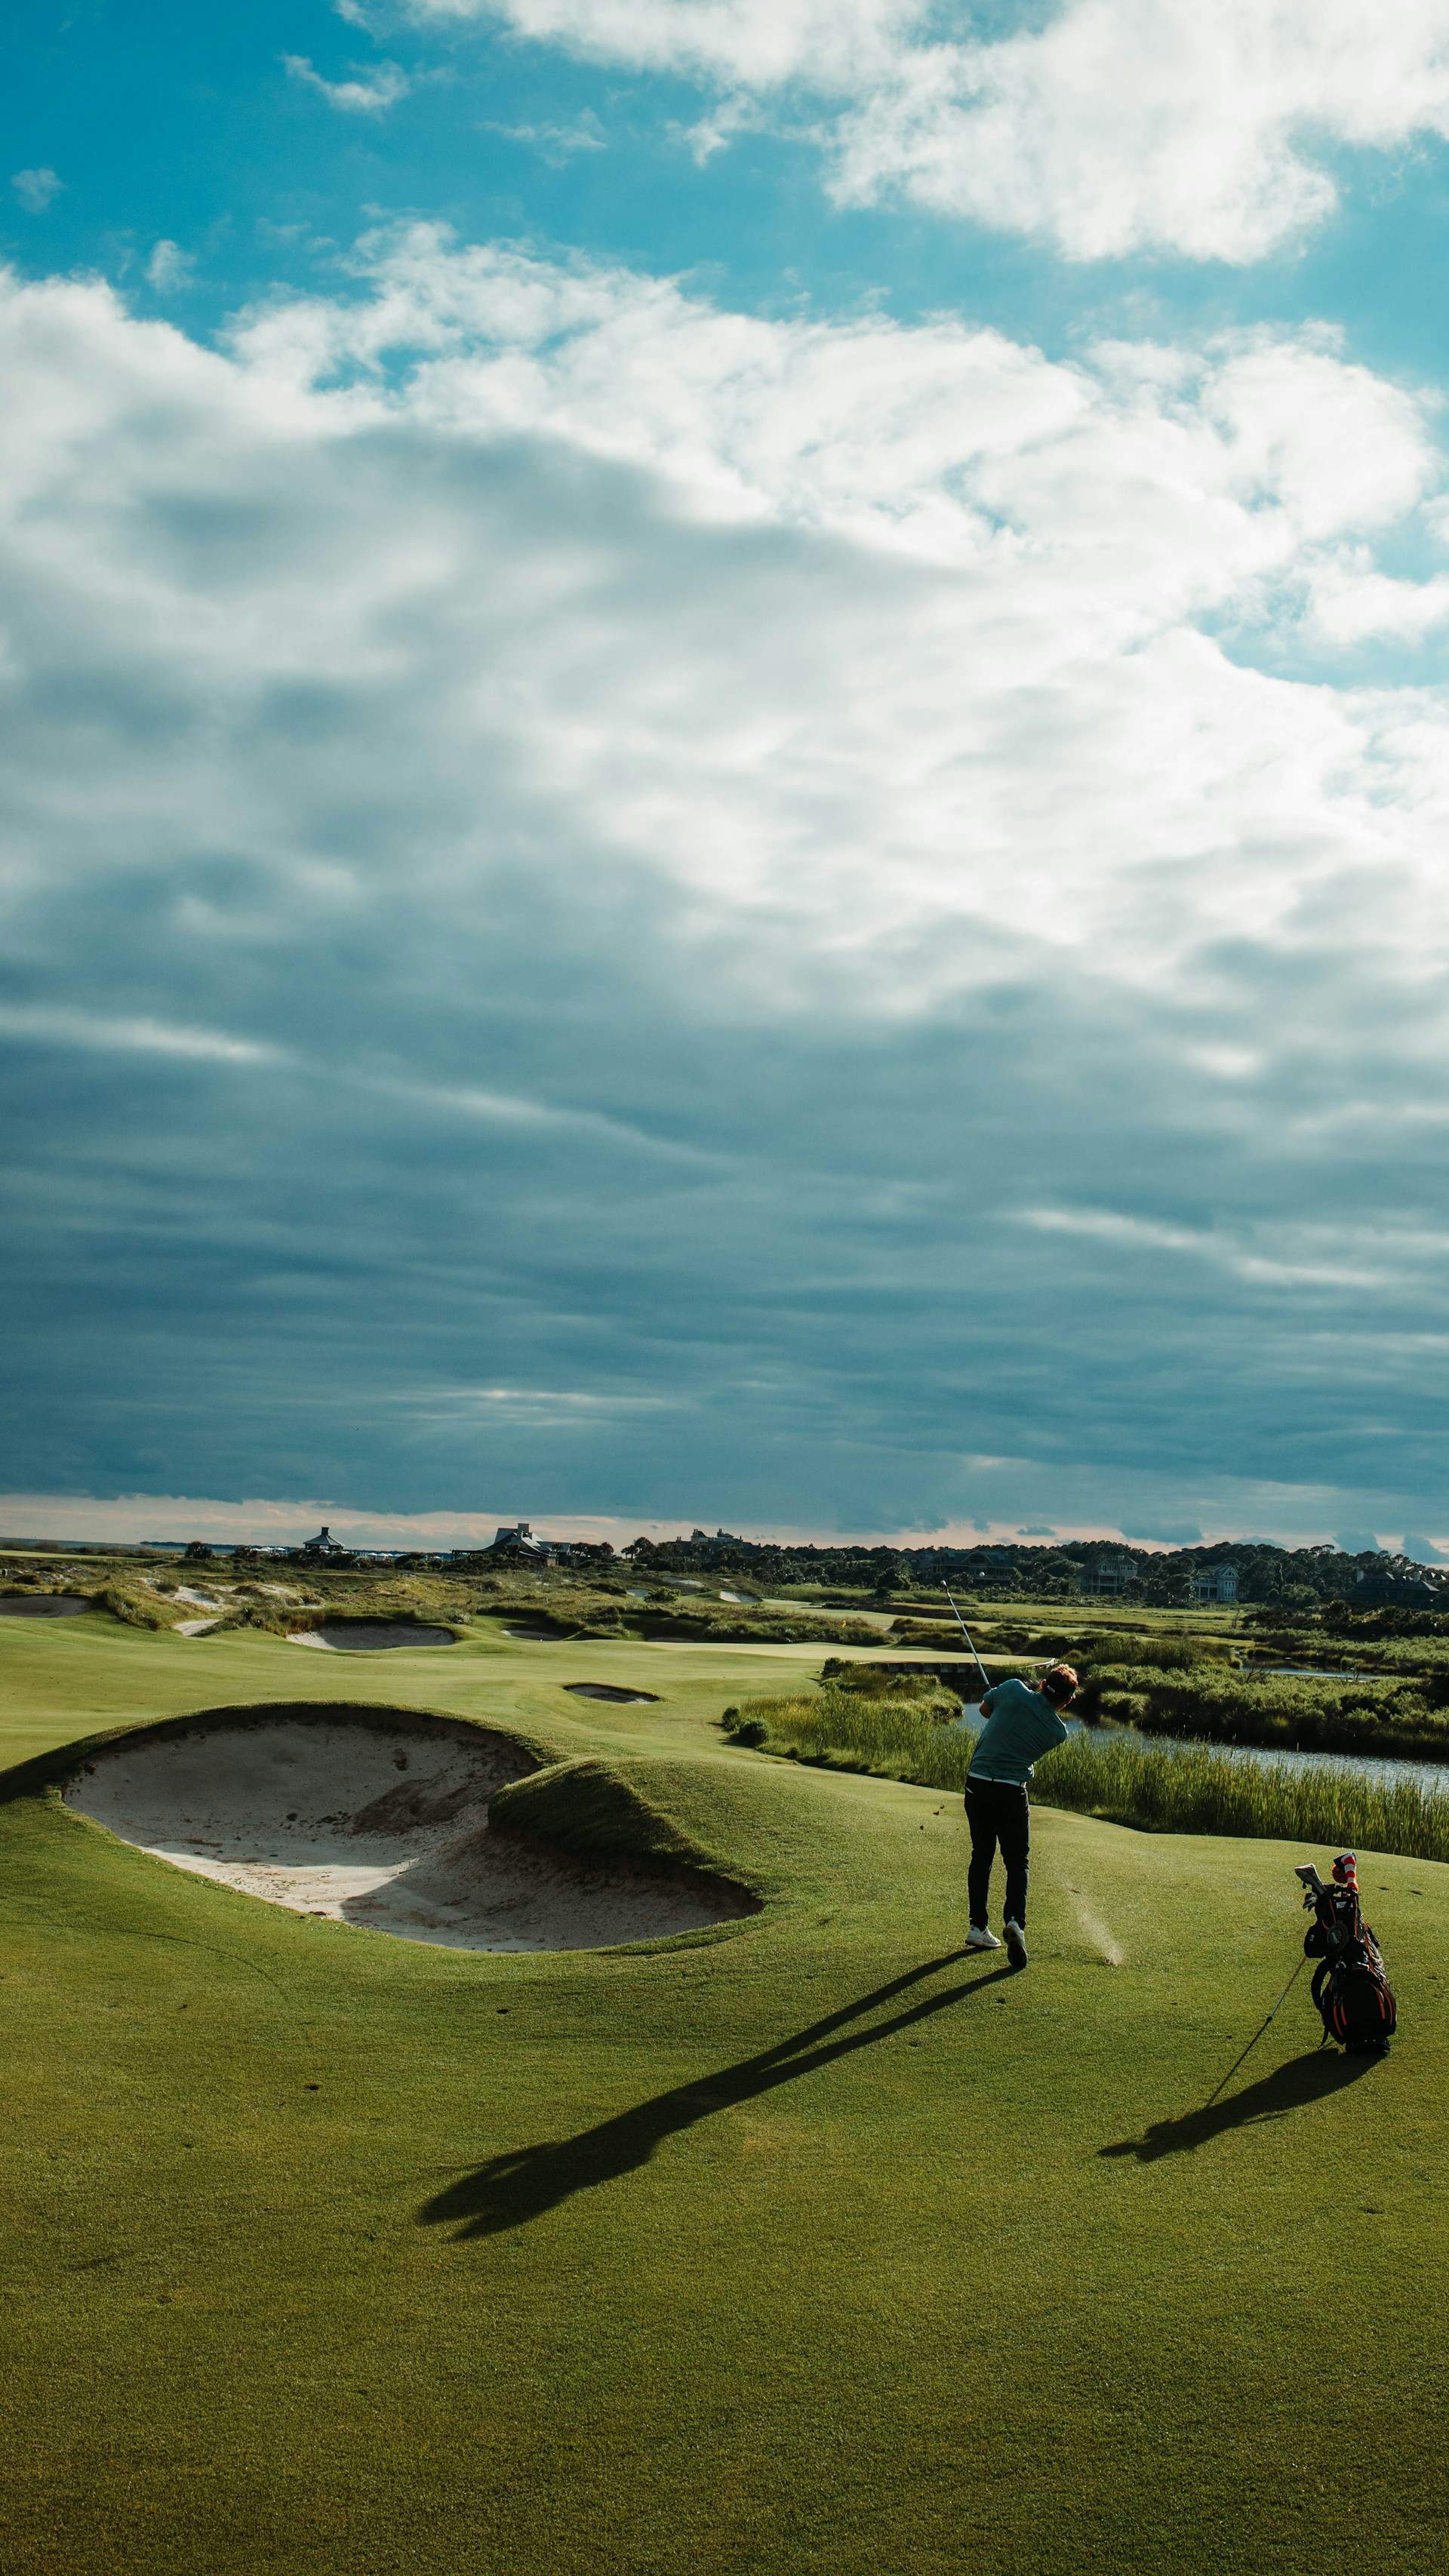 Golf: beneficis físics, mentals i socials